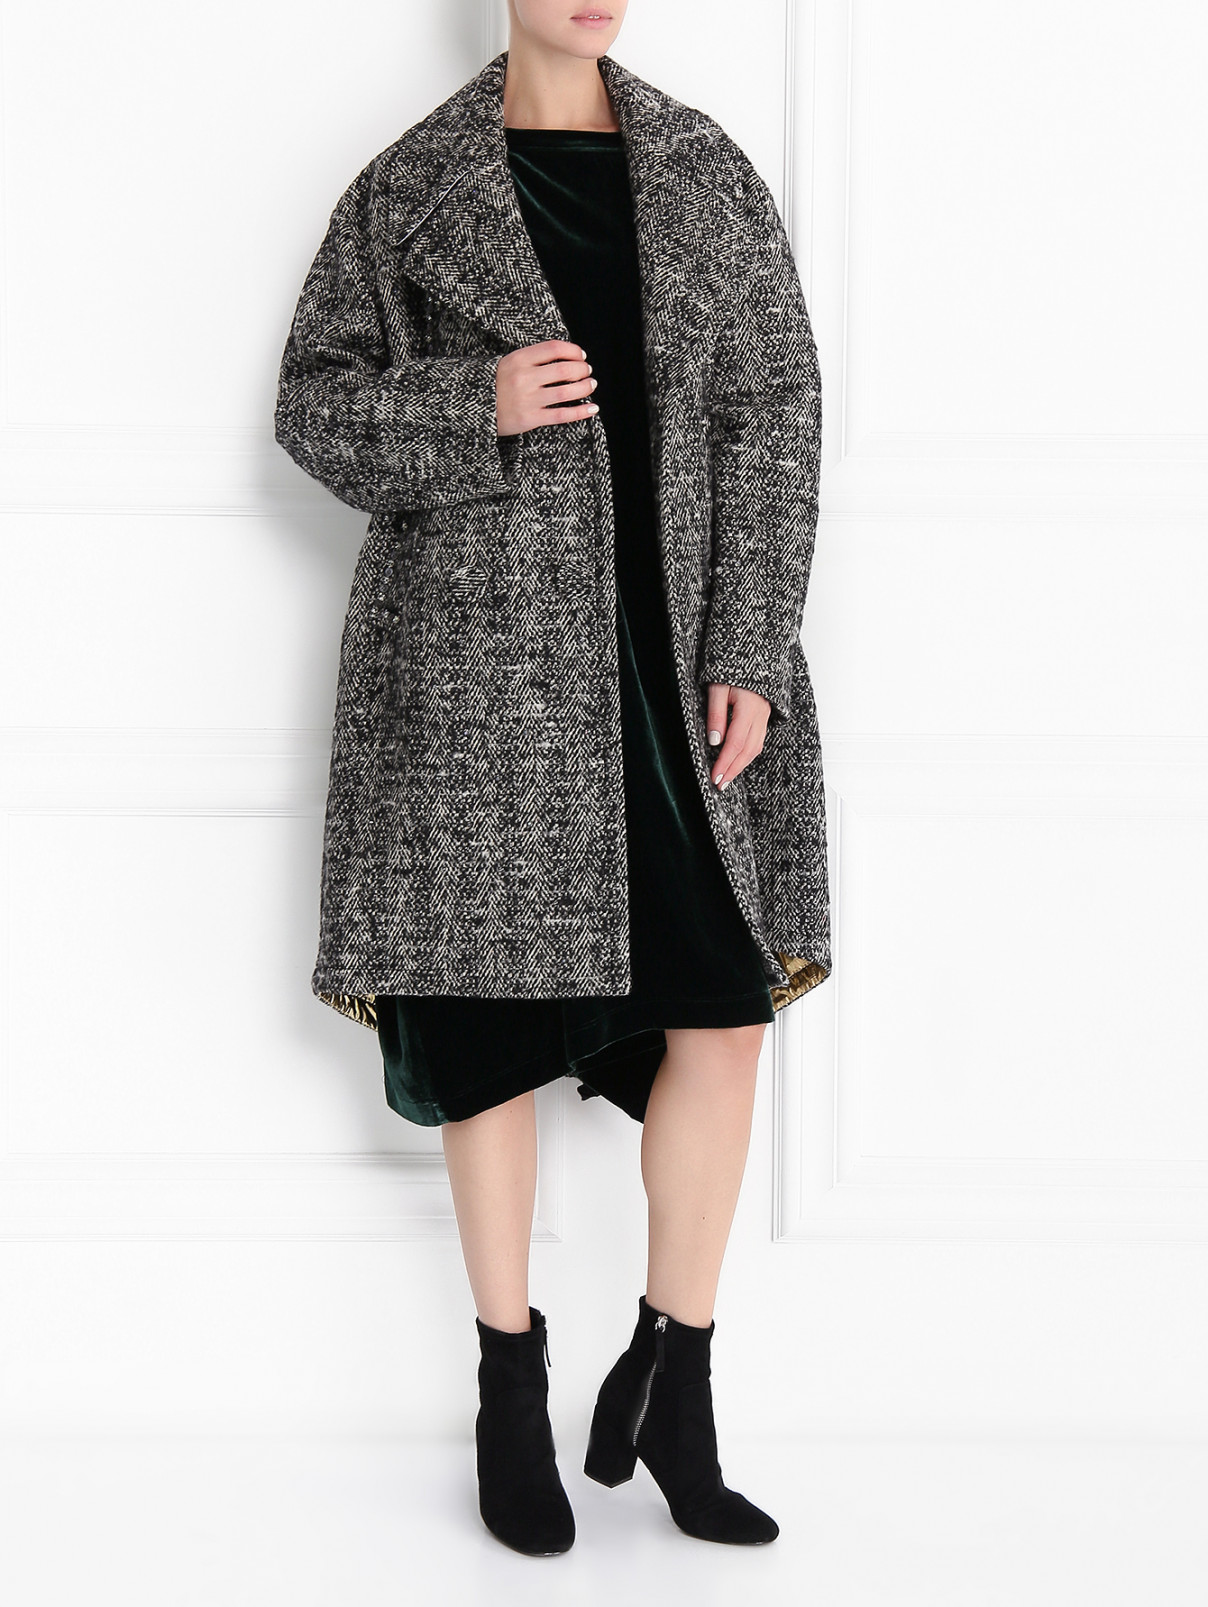 Пальто из шерсти декорированное кристаллами N21  –  Модель Общий вид  – Цвет:  Серый